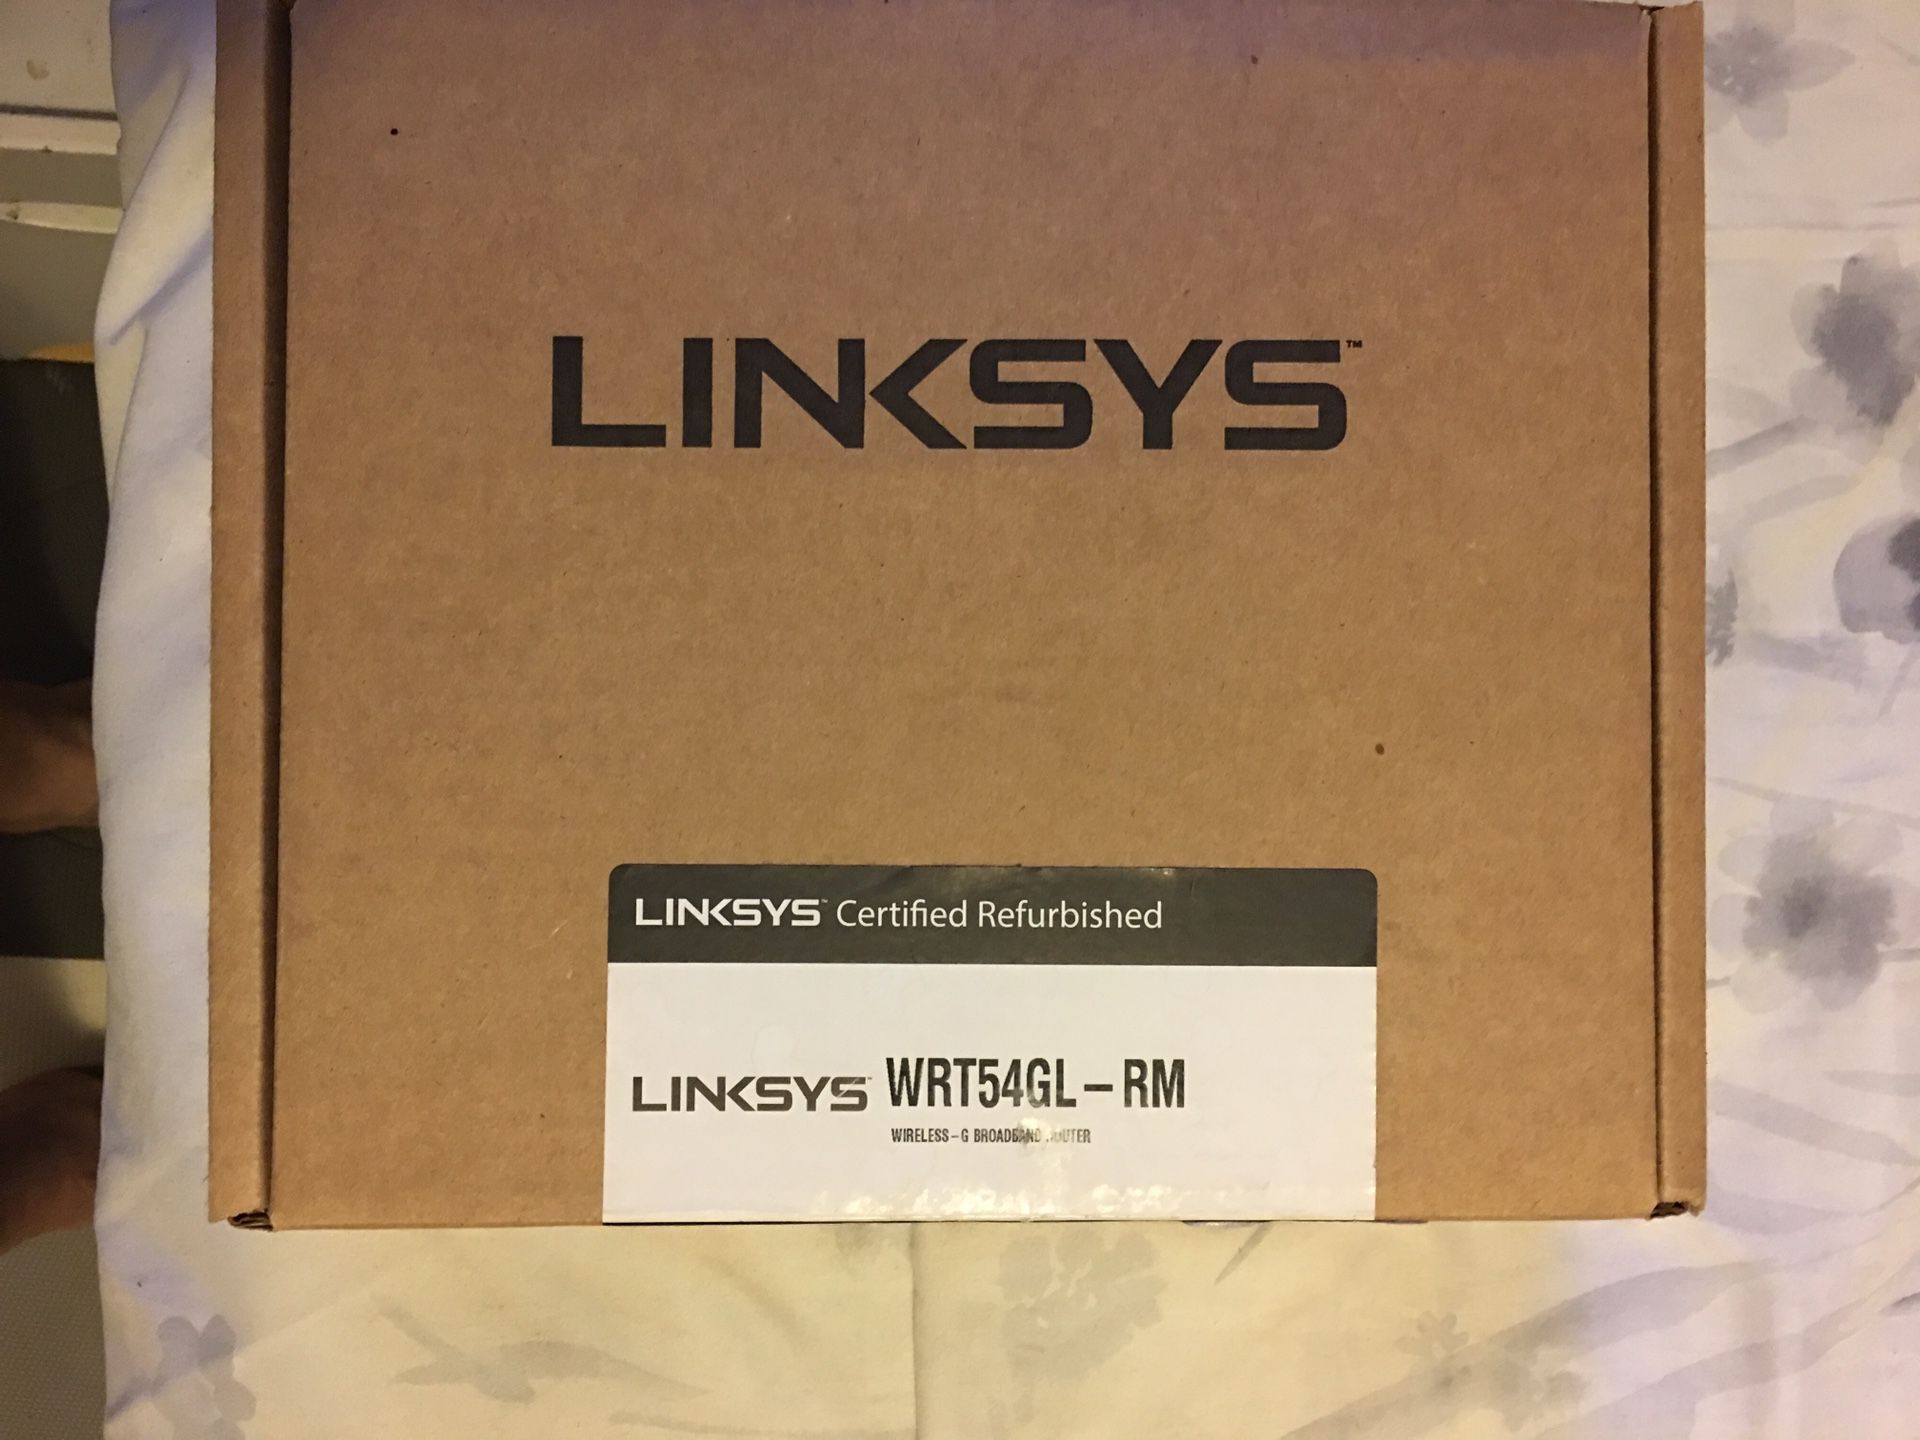 Linksys wireless